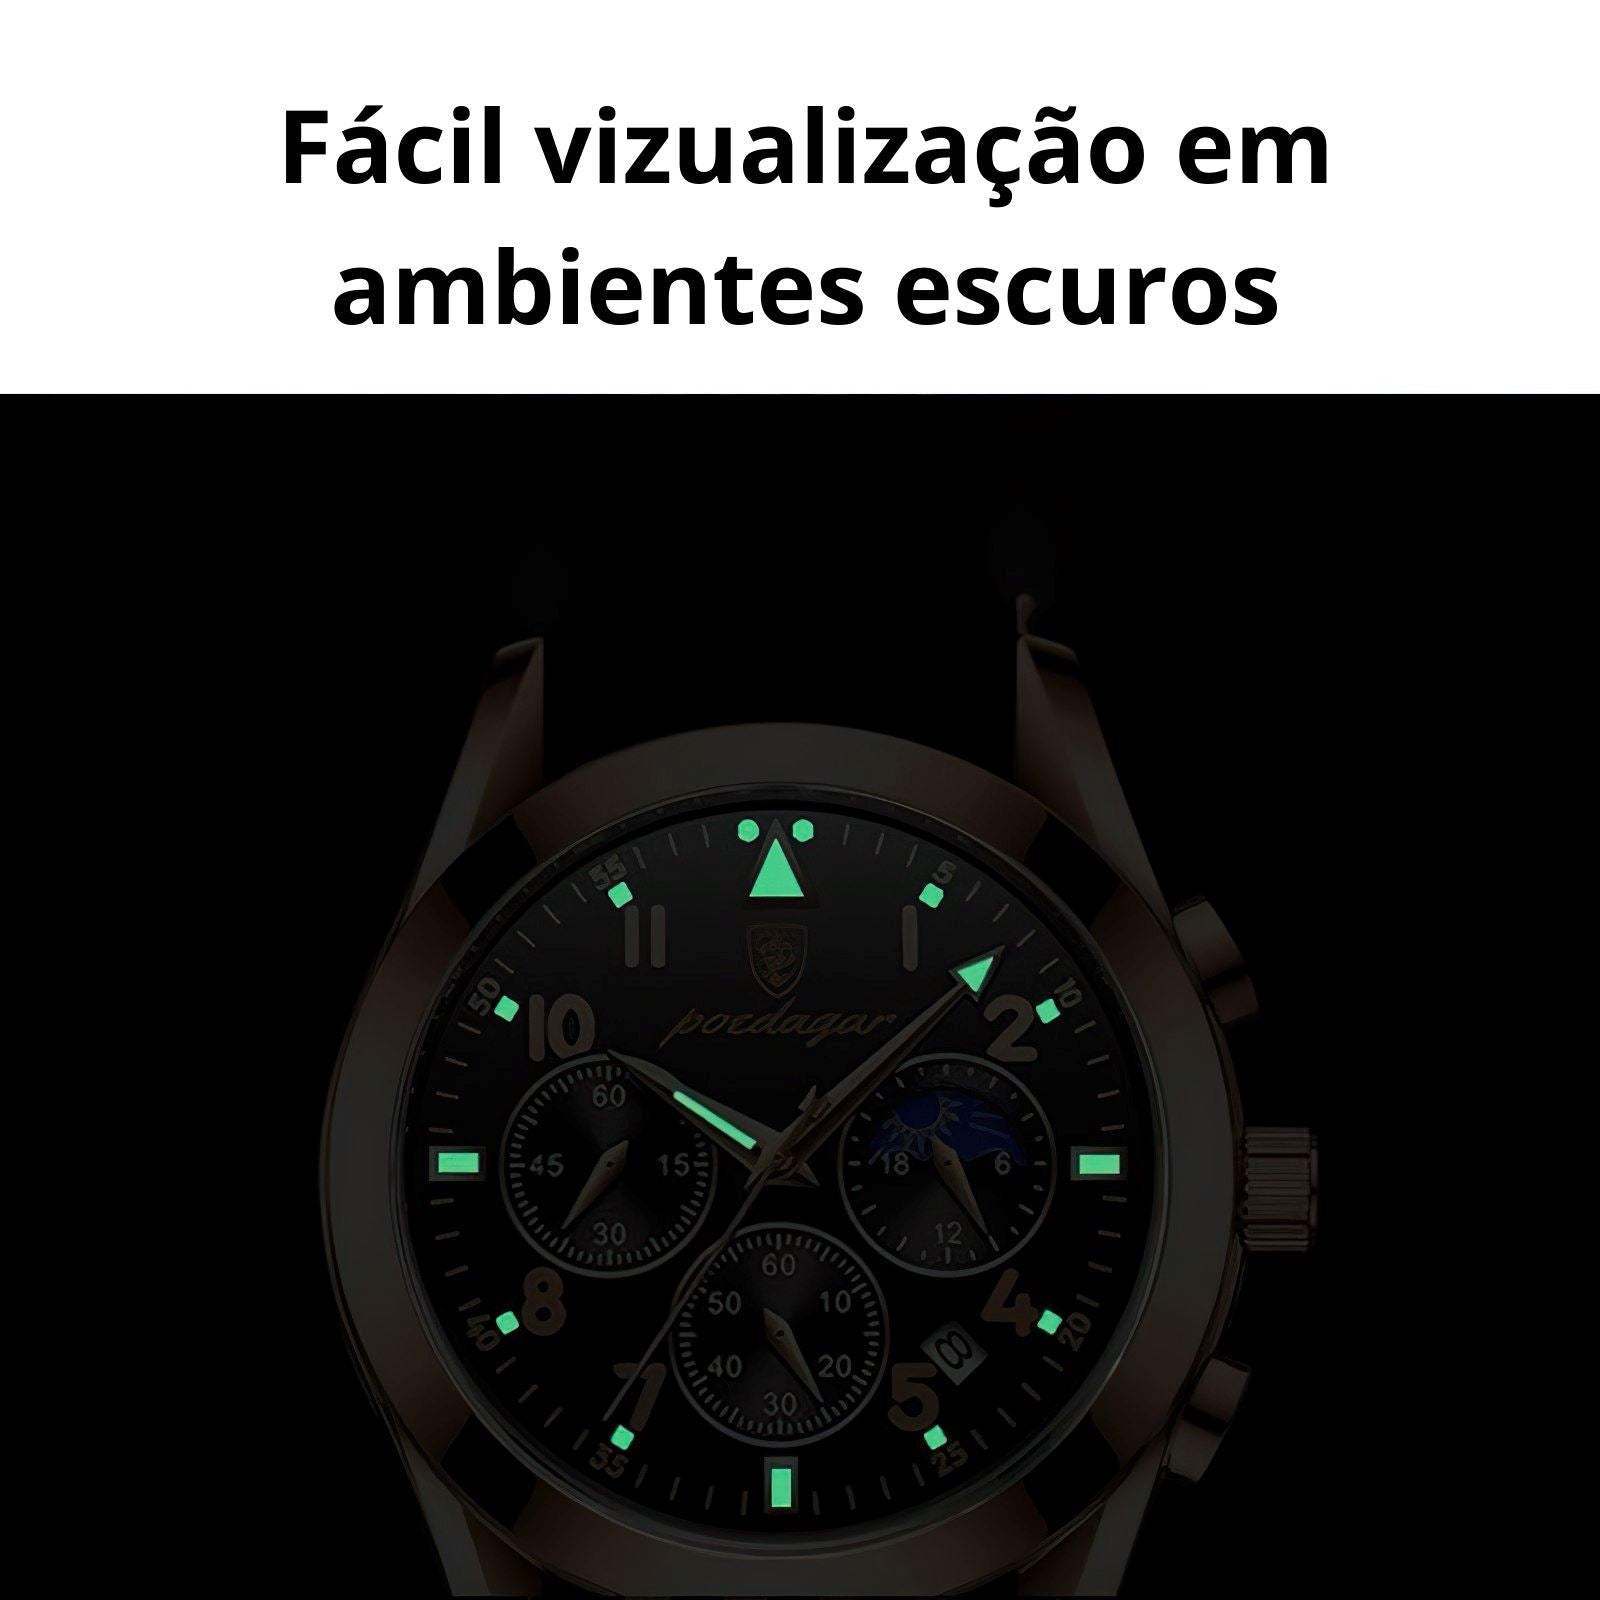 Relógio Aço Inox à Prova D'Agua - Exclusive Relógio Exclusive - Acessórios elefanteonline.com.br 